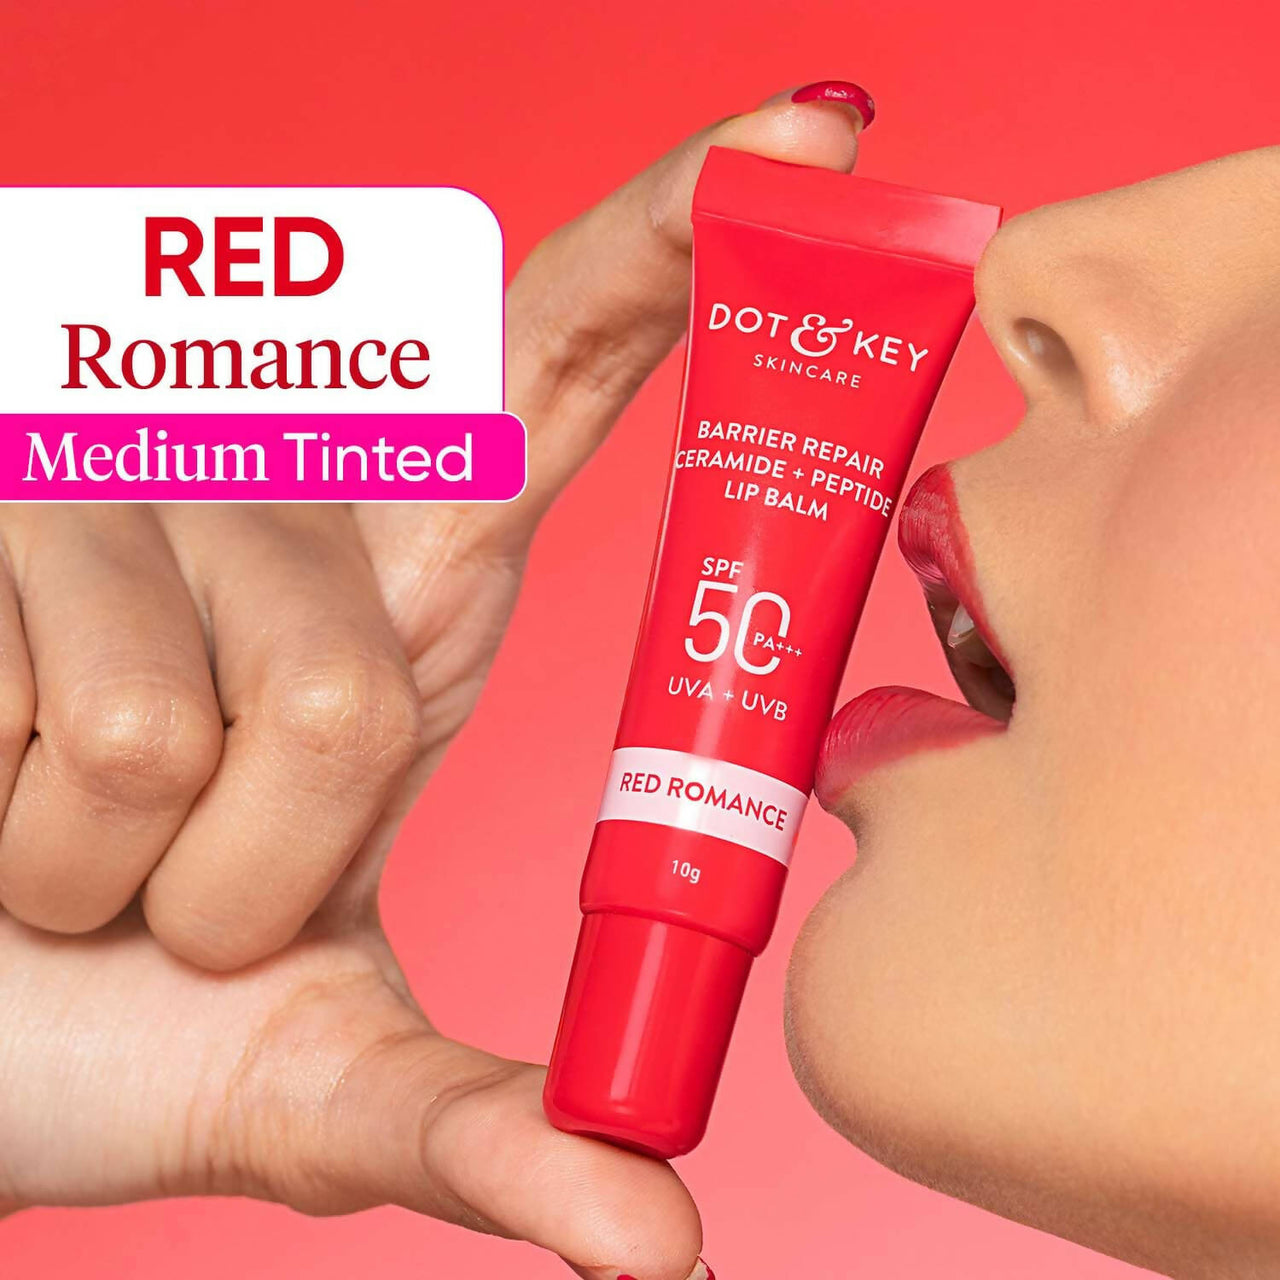 Dot & Key Barrier Repair Ceramide & Peptide SPF 50 Lip Balm - Red Romance - Distacart